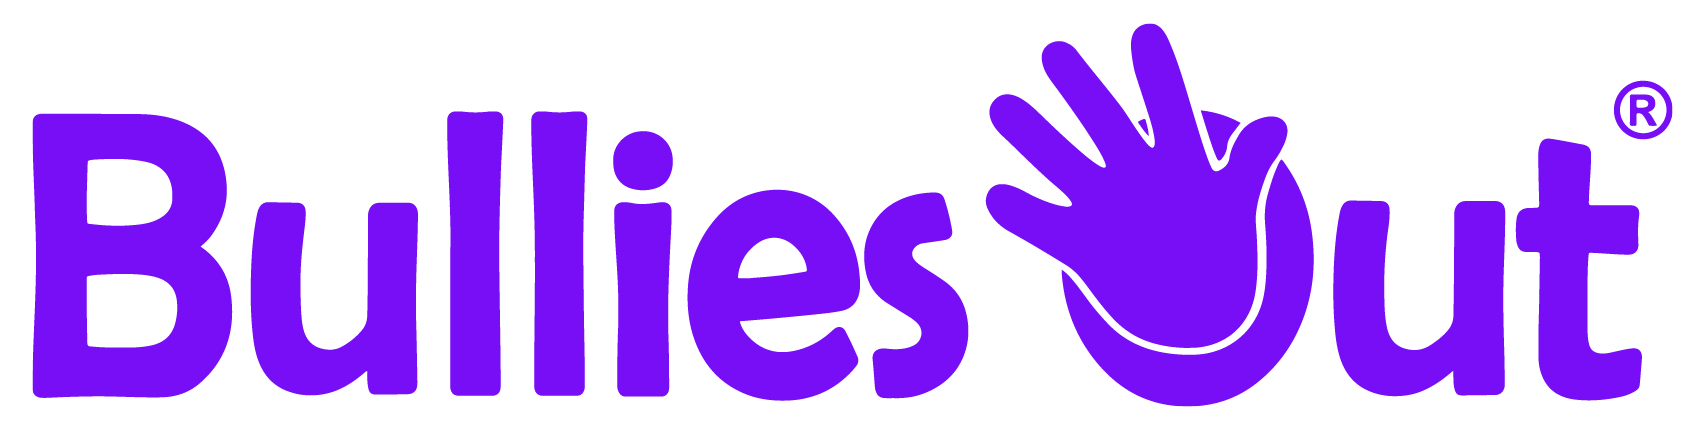 Company logo image - BulliesOut